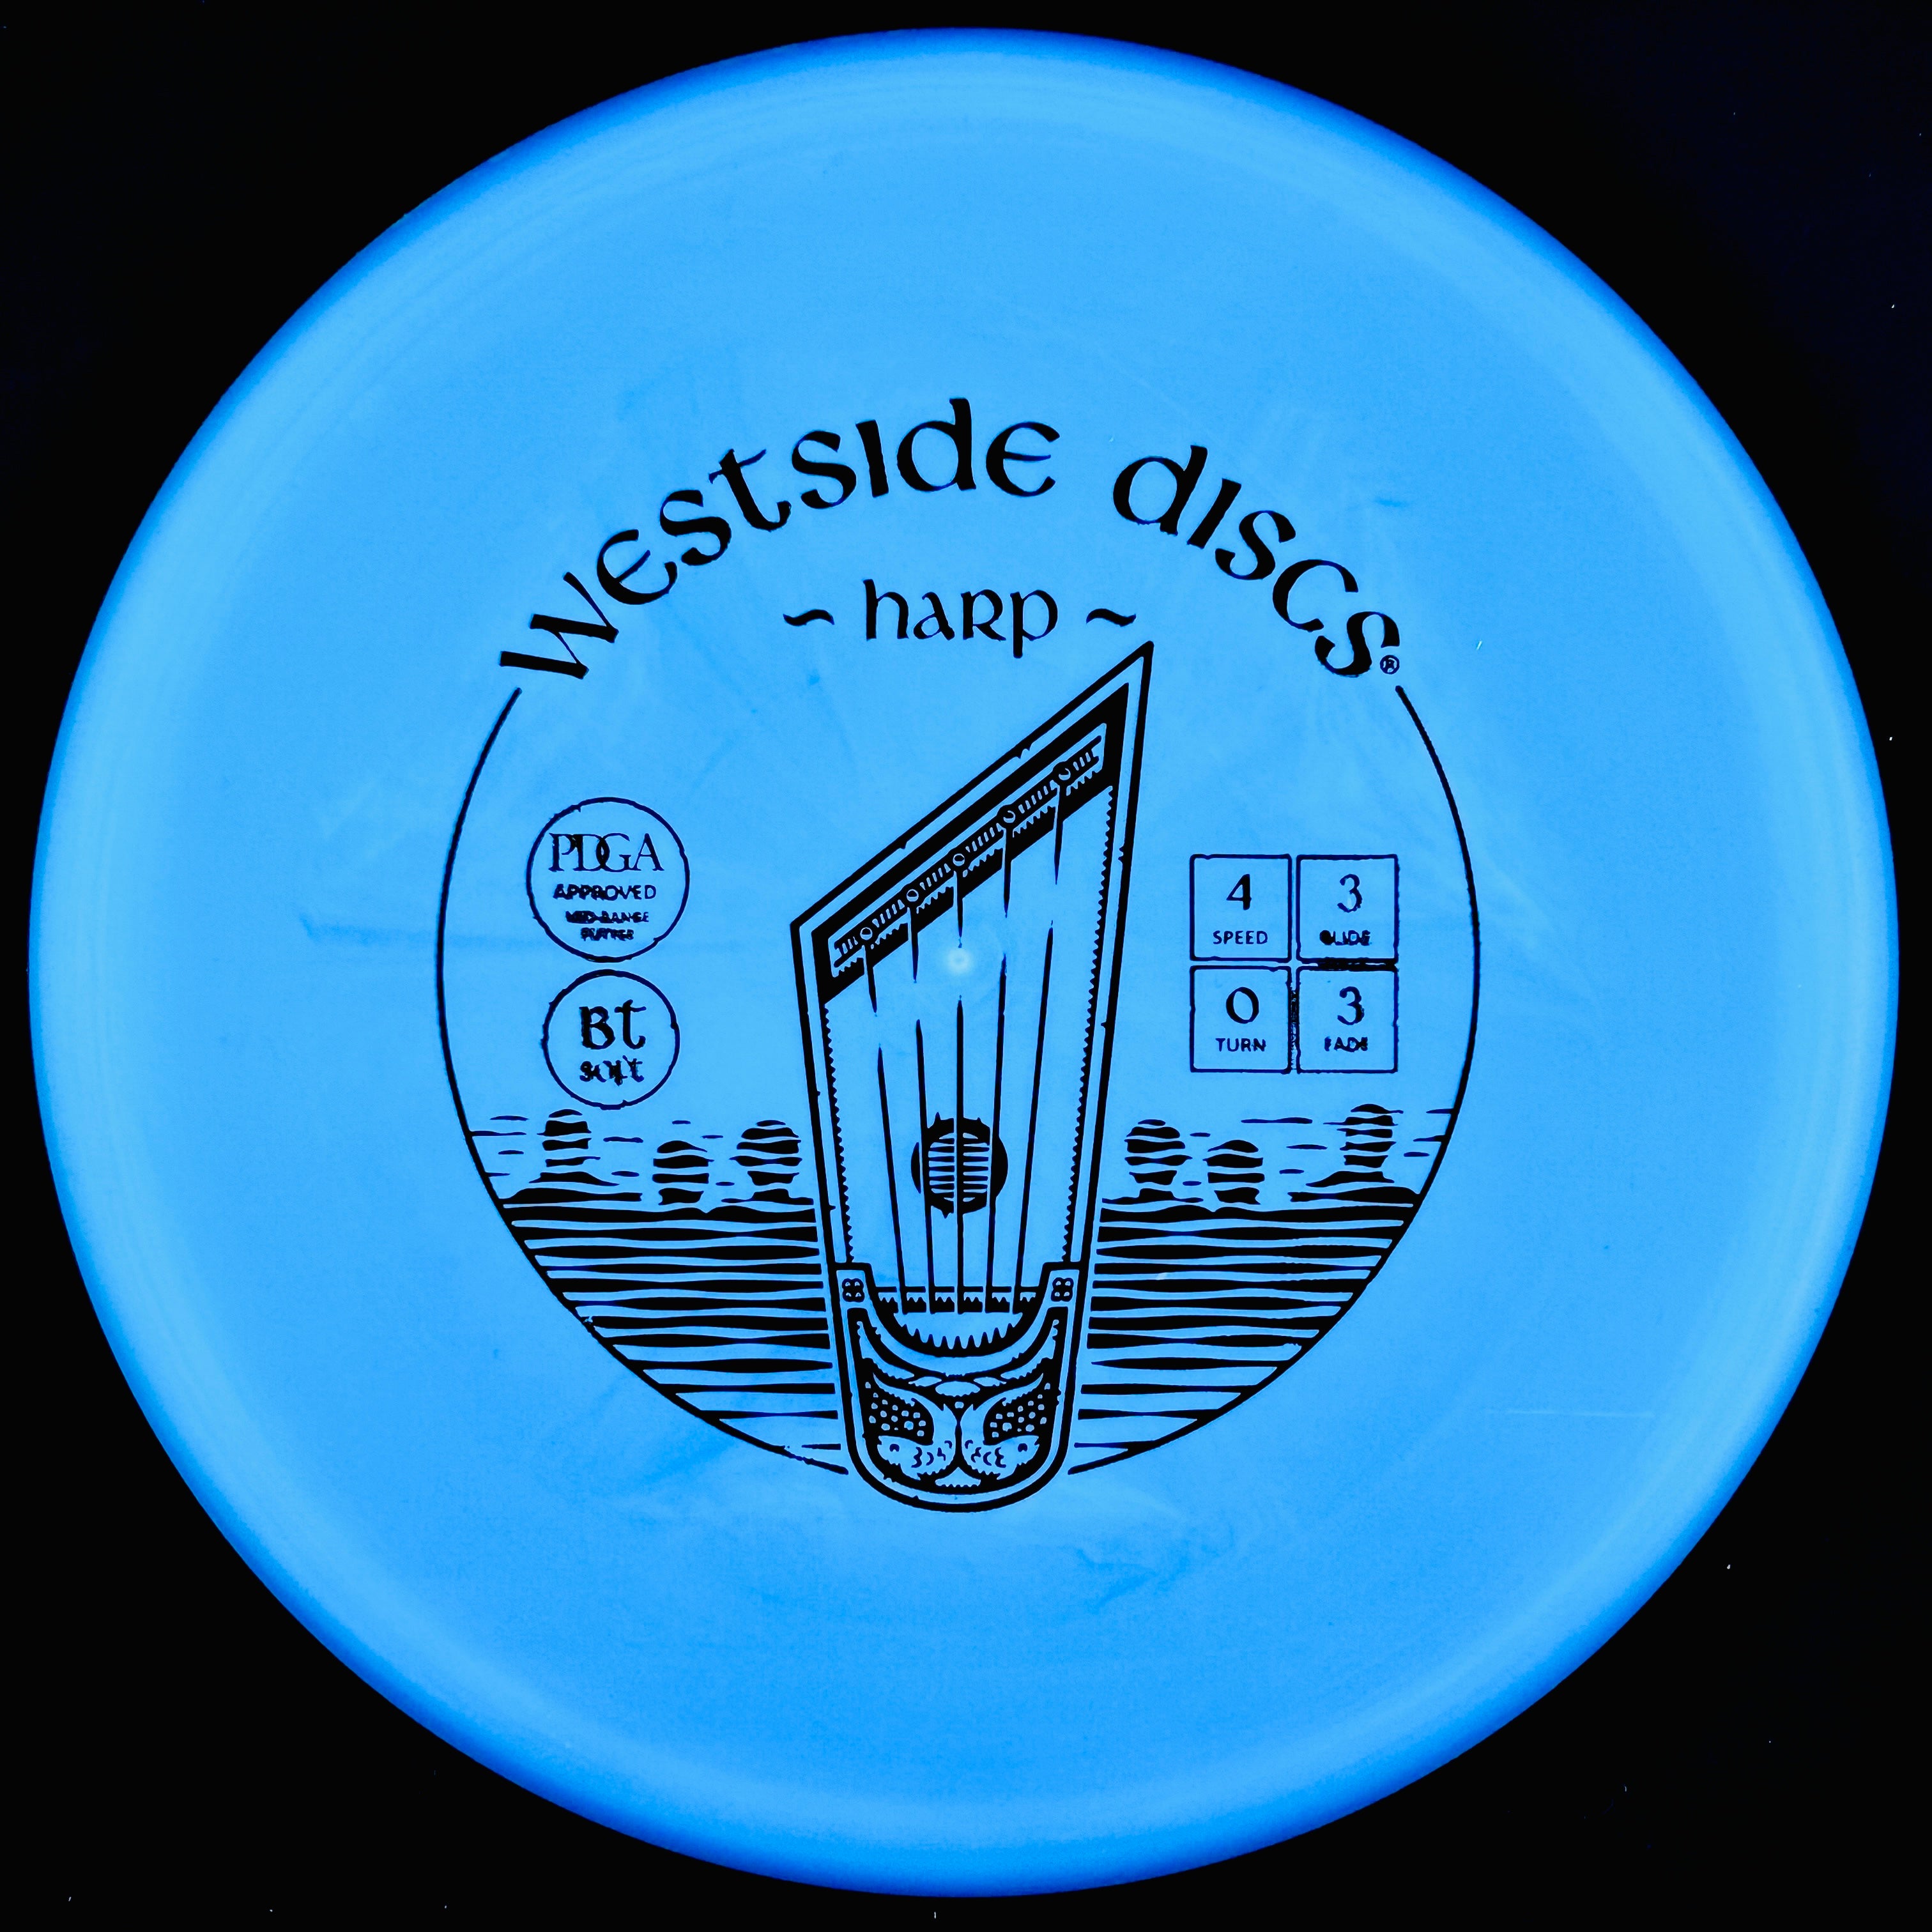 Westside Discs BT Soft Harp